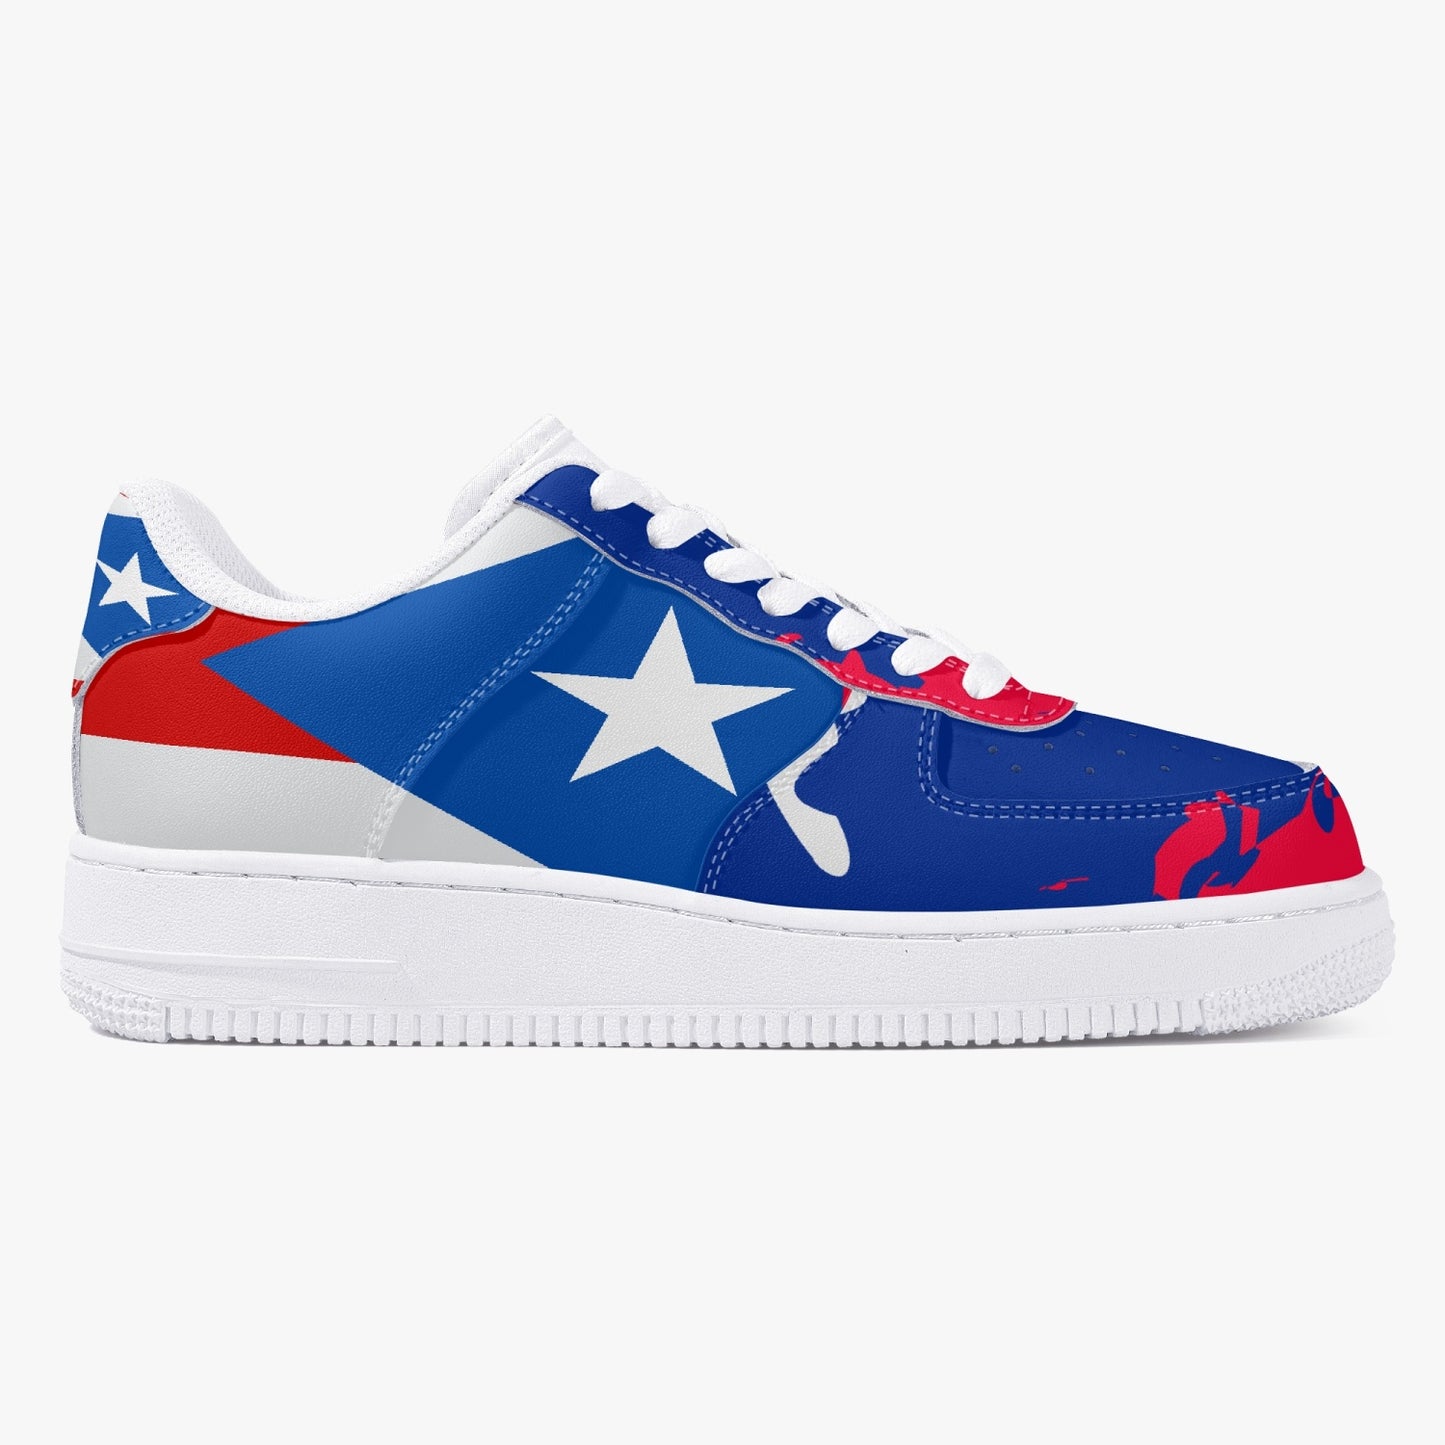 1Tweezy Air Puerto Rico Leather Sneakers